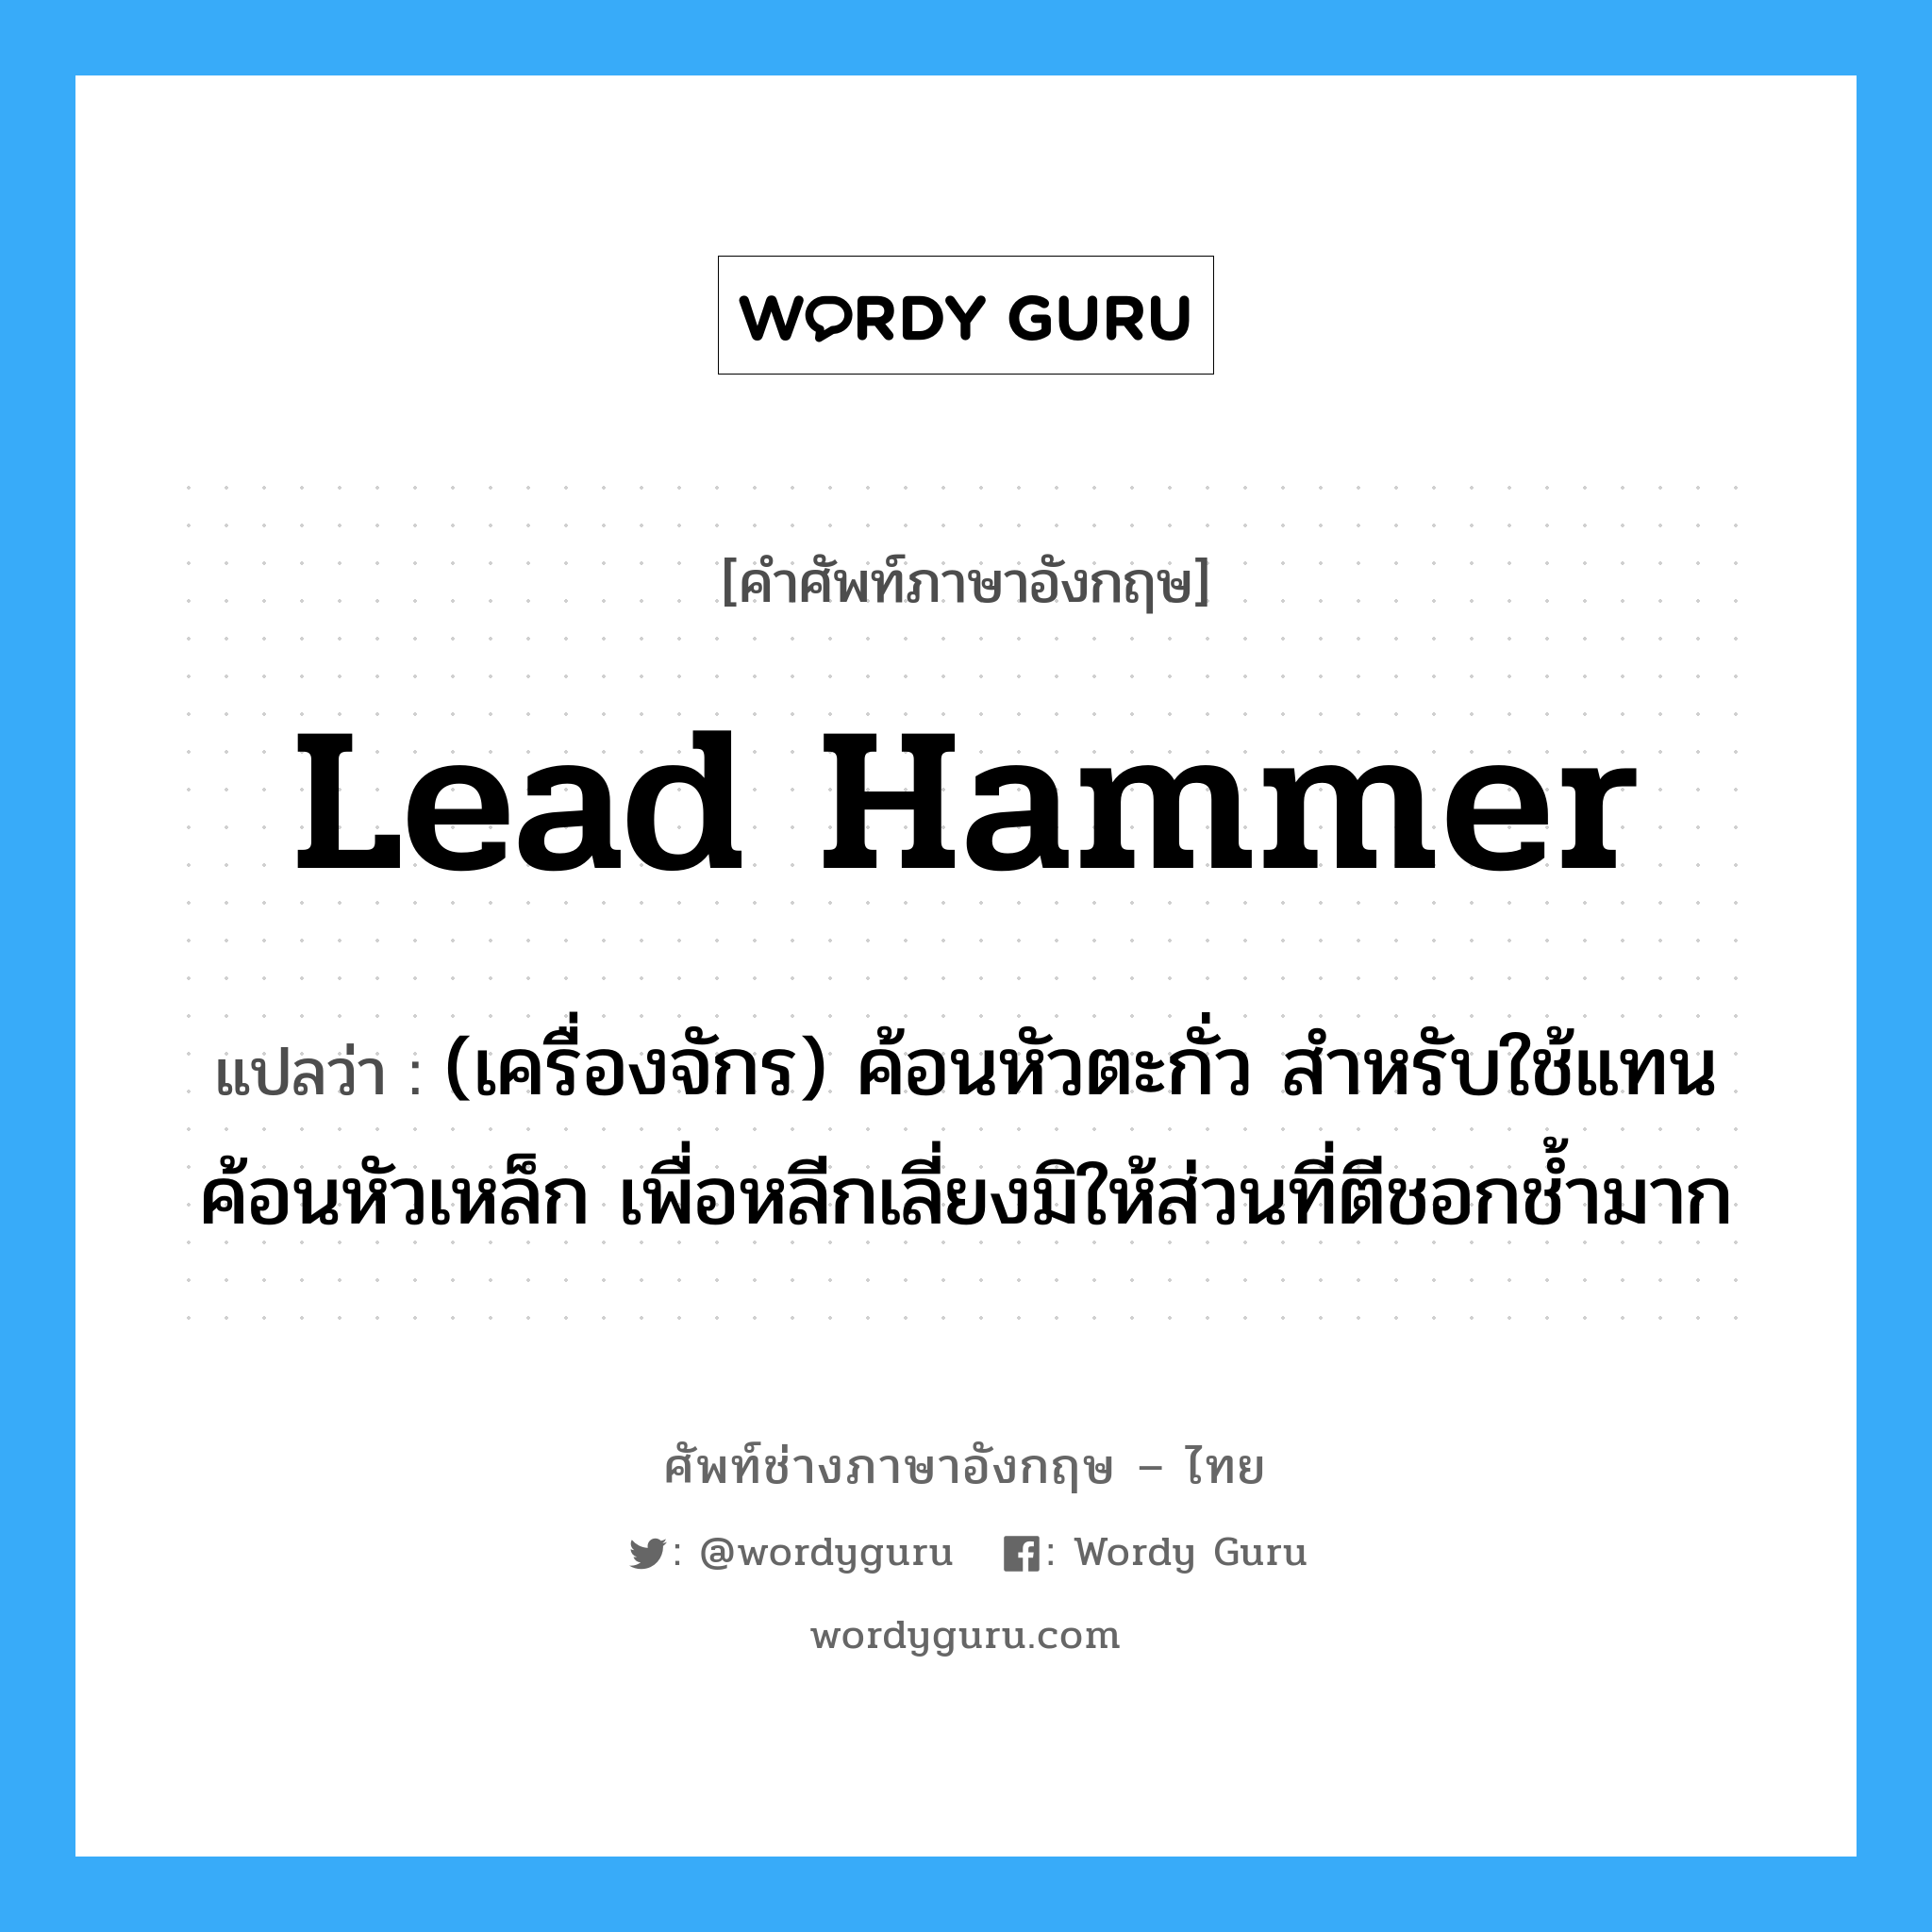 lead hammer แปลว่า?, คำศัพท์ช่างภาษาอังกฤษ - ไทย lead hammer คำศัพท์ภาษาอังกฤษ lead hammer แปลว่า (เครื่องจักร) ค้อนหัวตะกั่ว สำหรับใช้แทนค้อนหัวเหล็ก เพื่อหลีกเลี่ยงมิให้ส่วนที่ตีชอกช้ำมาก